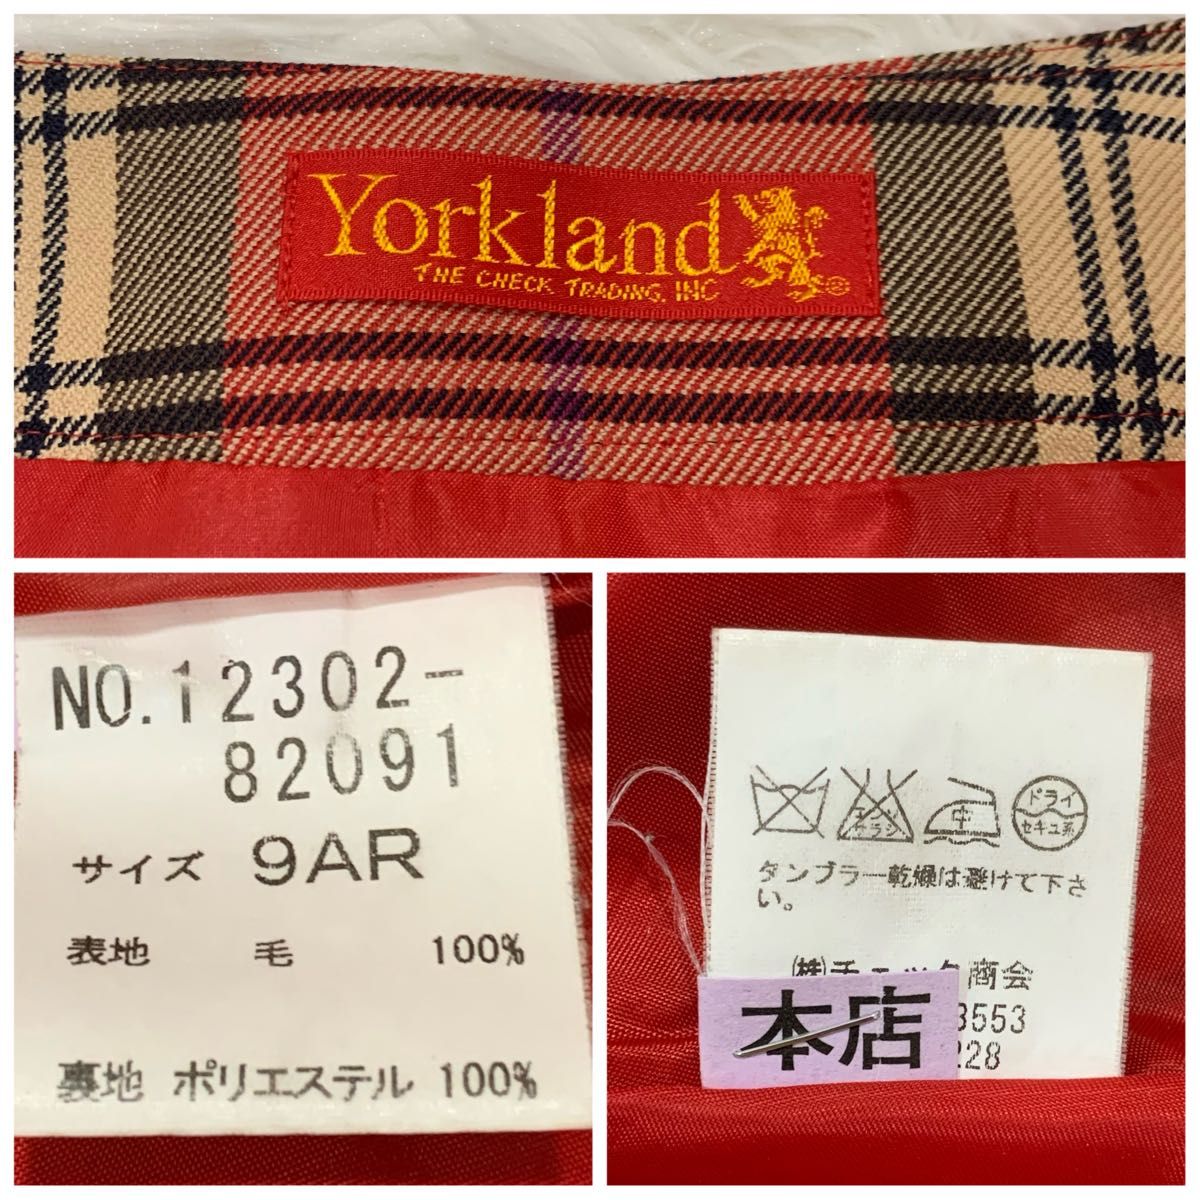 【美品】York land タータンチェック 膝丈スカート 9号 平成レトロ 赤